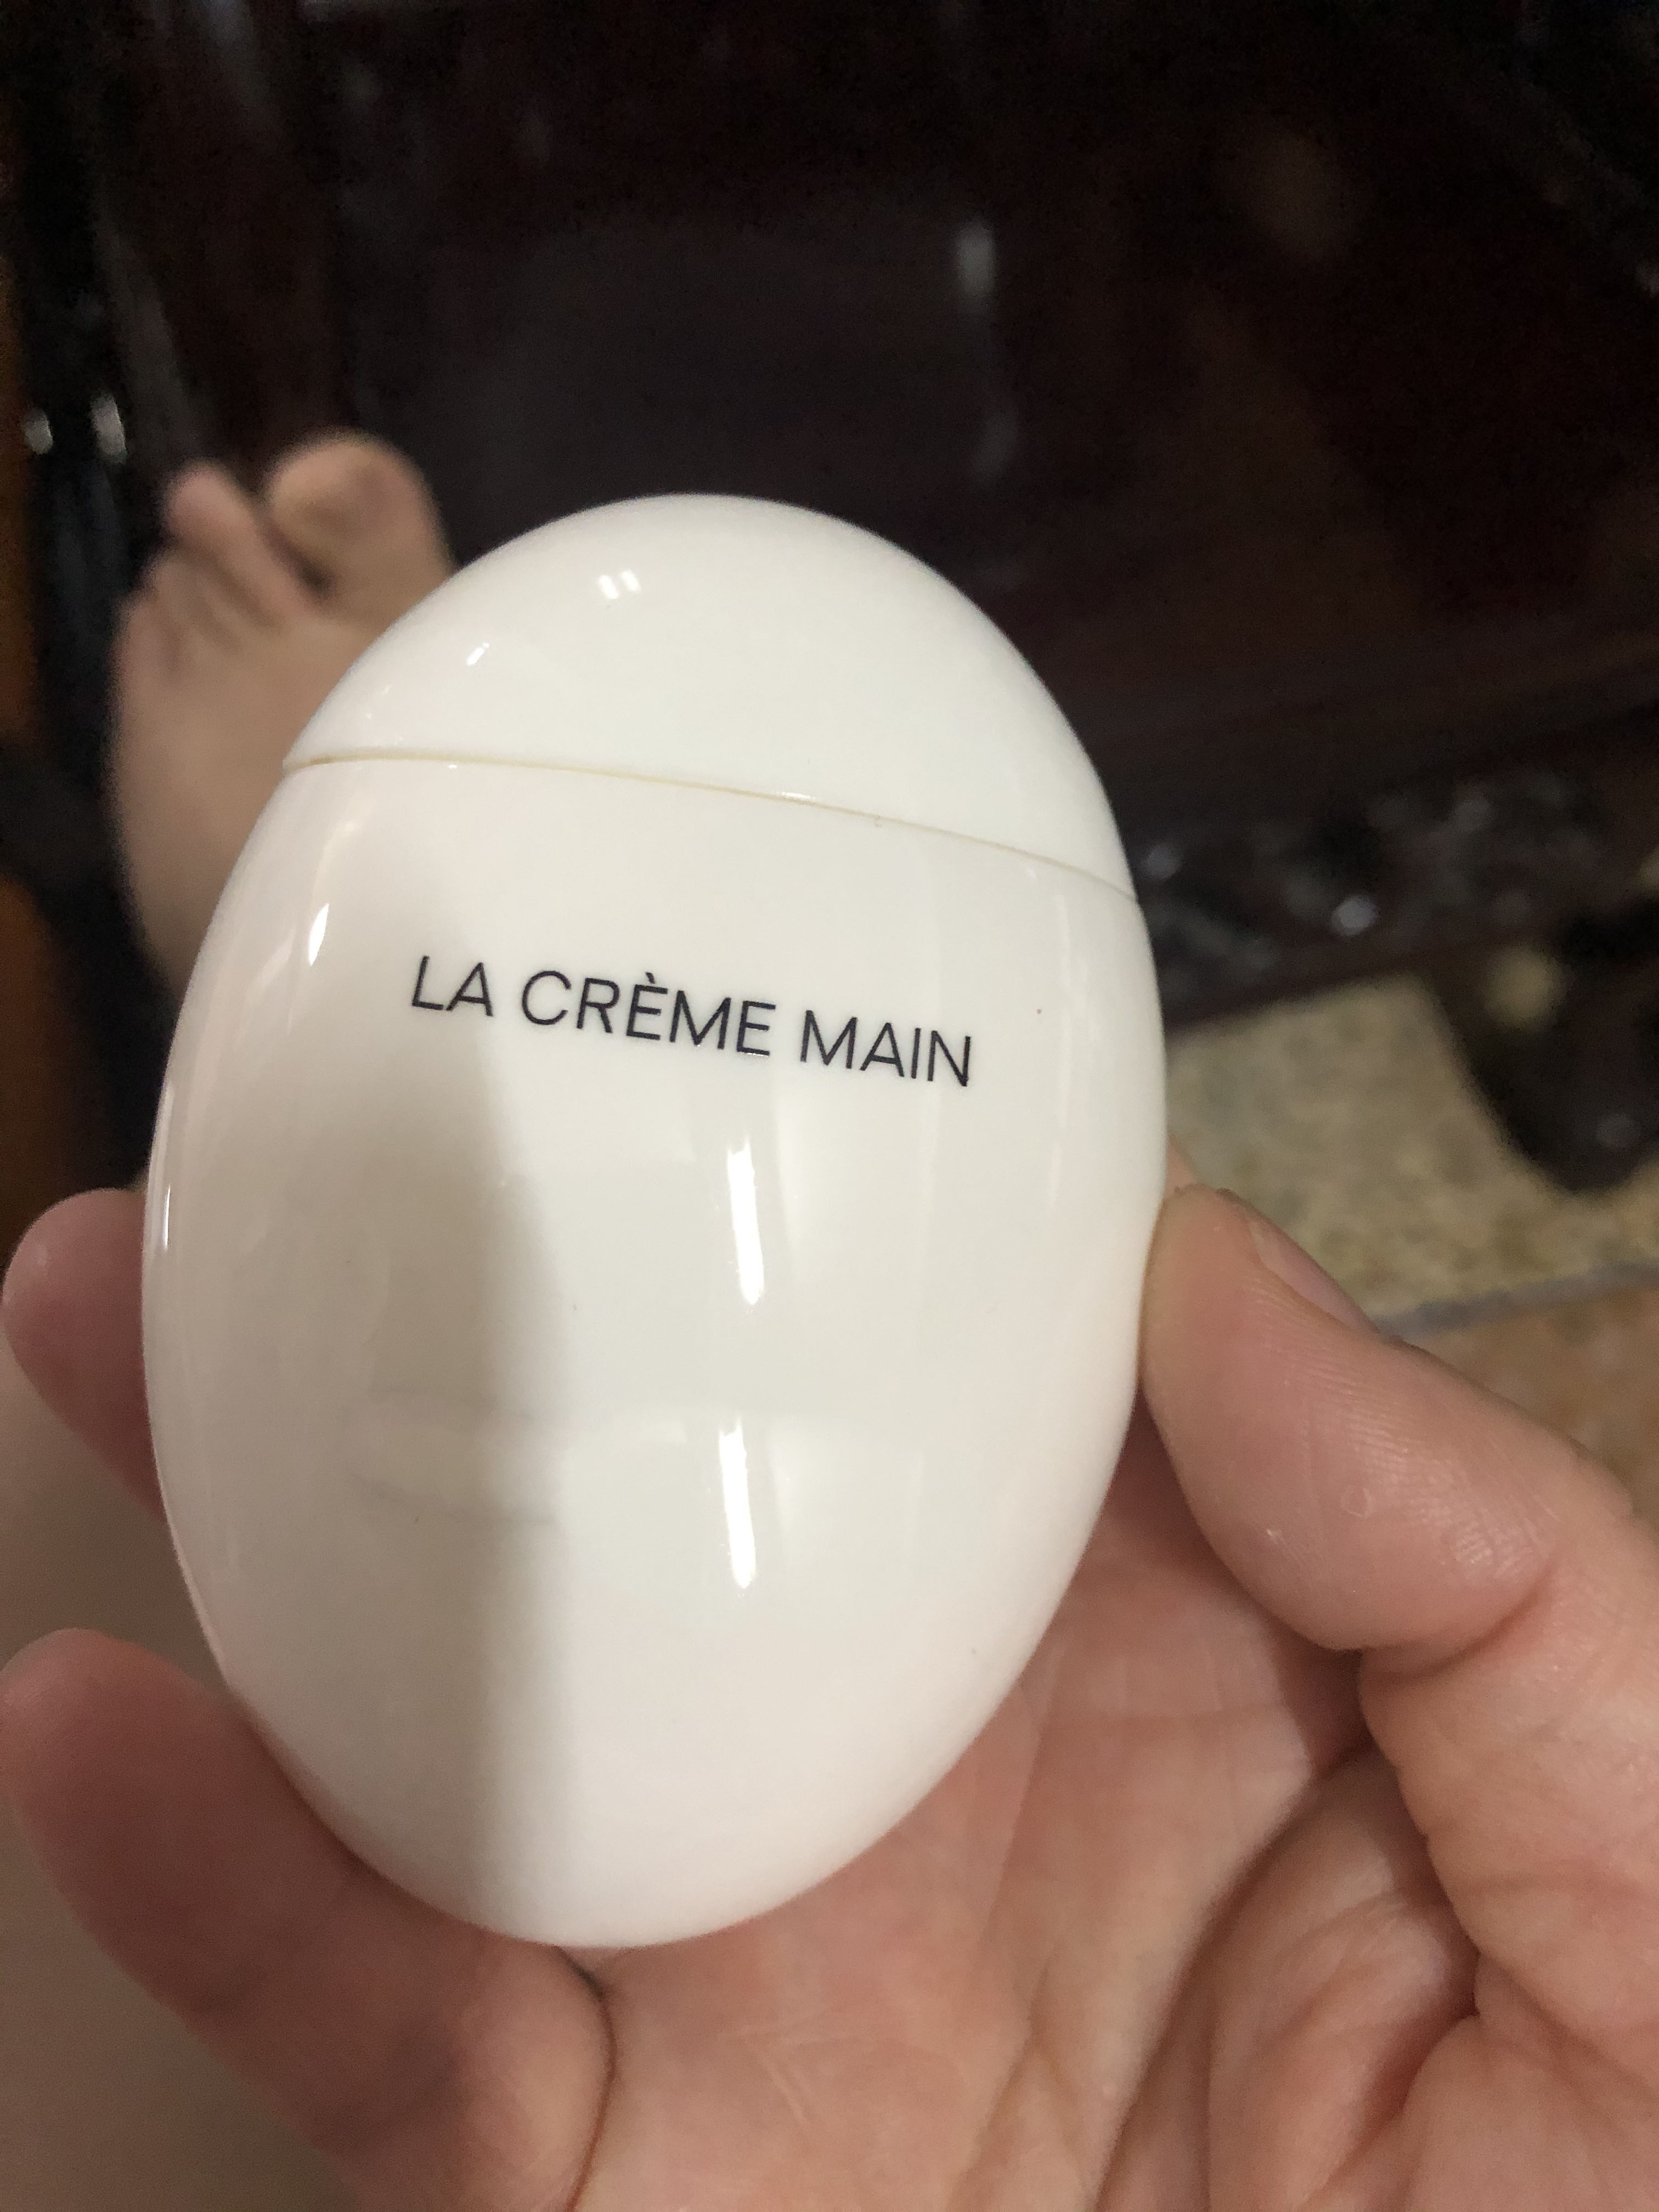 famosa marca LE LIFT crema de manos LA CREME MAIN clara de huevo negro crema de manos de huevo cuidado de la piel premierlash calidad SUPERIOR